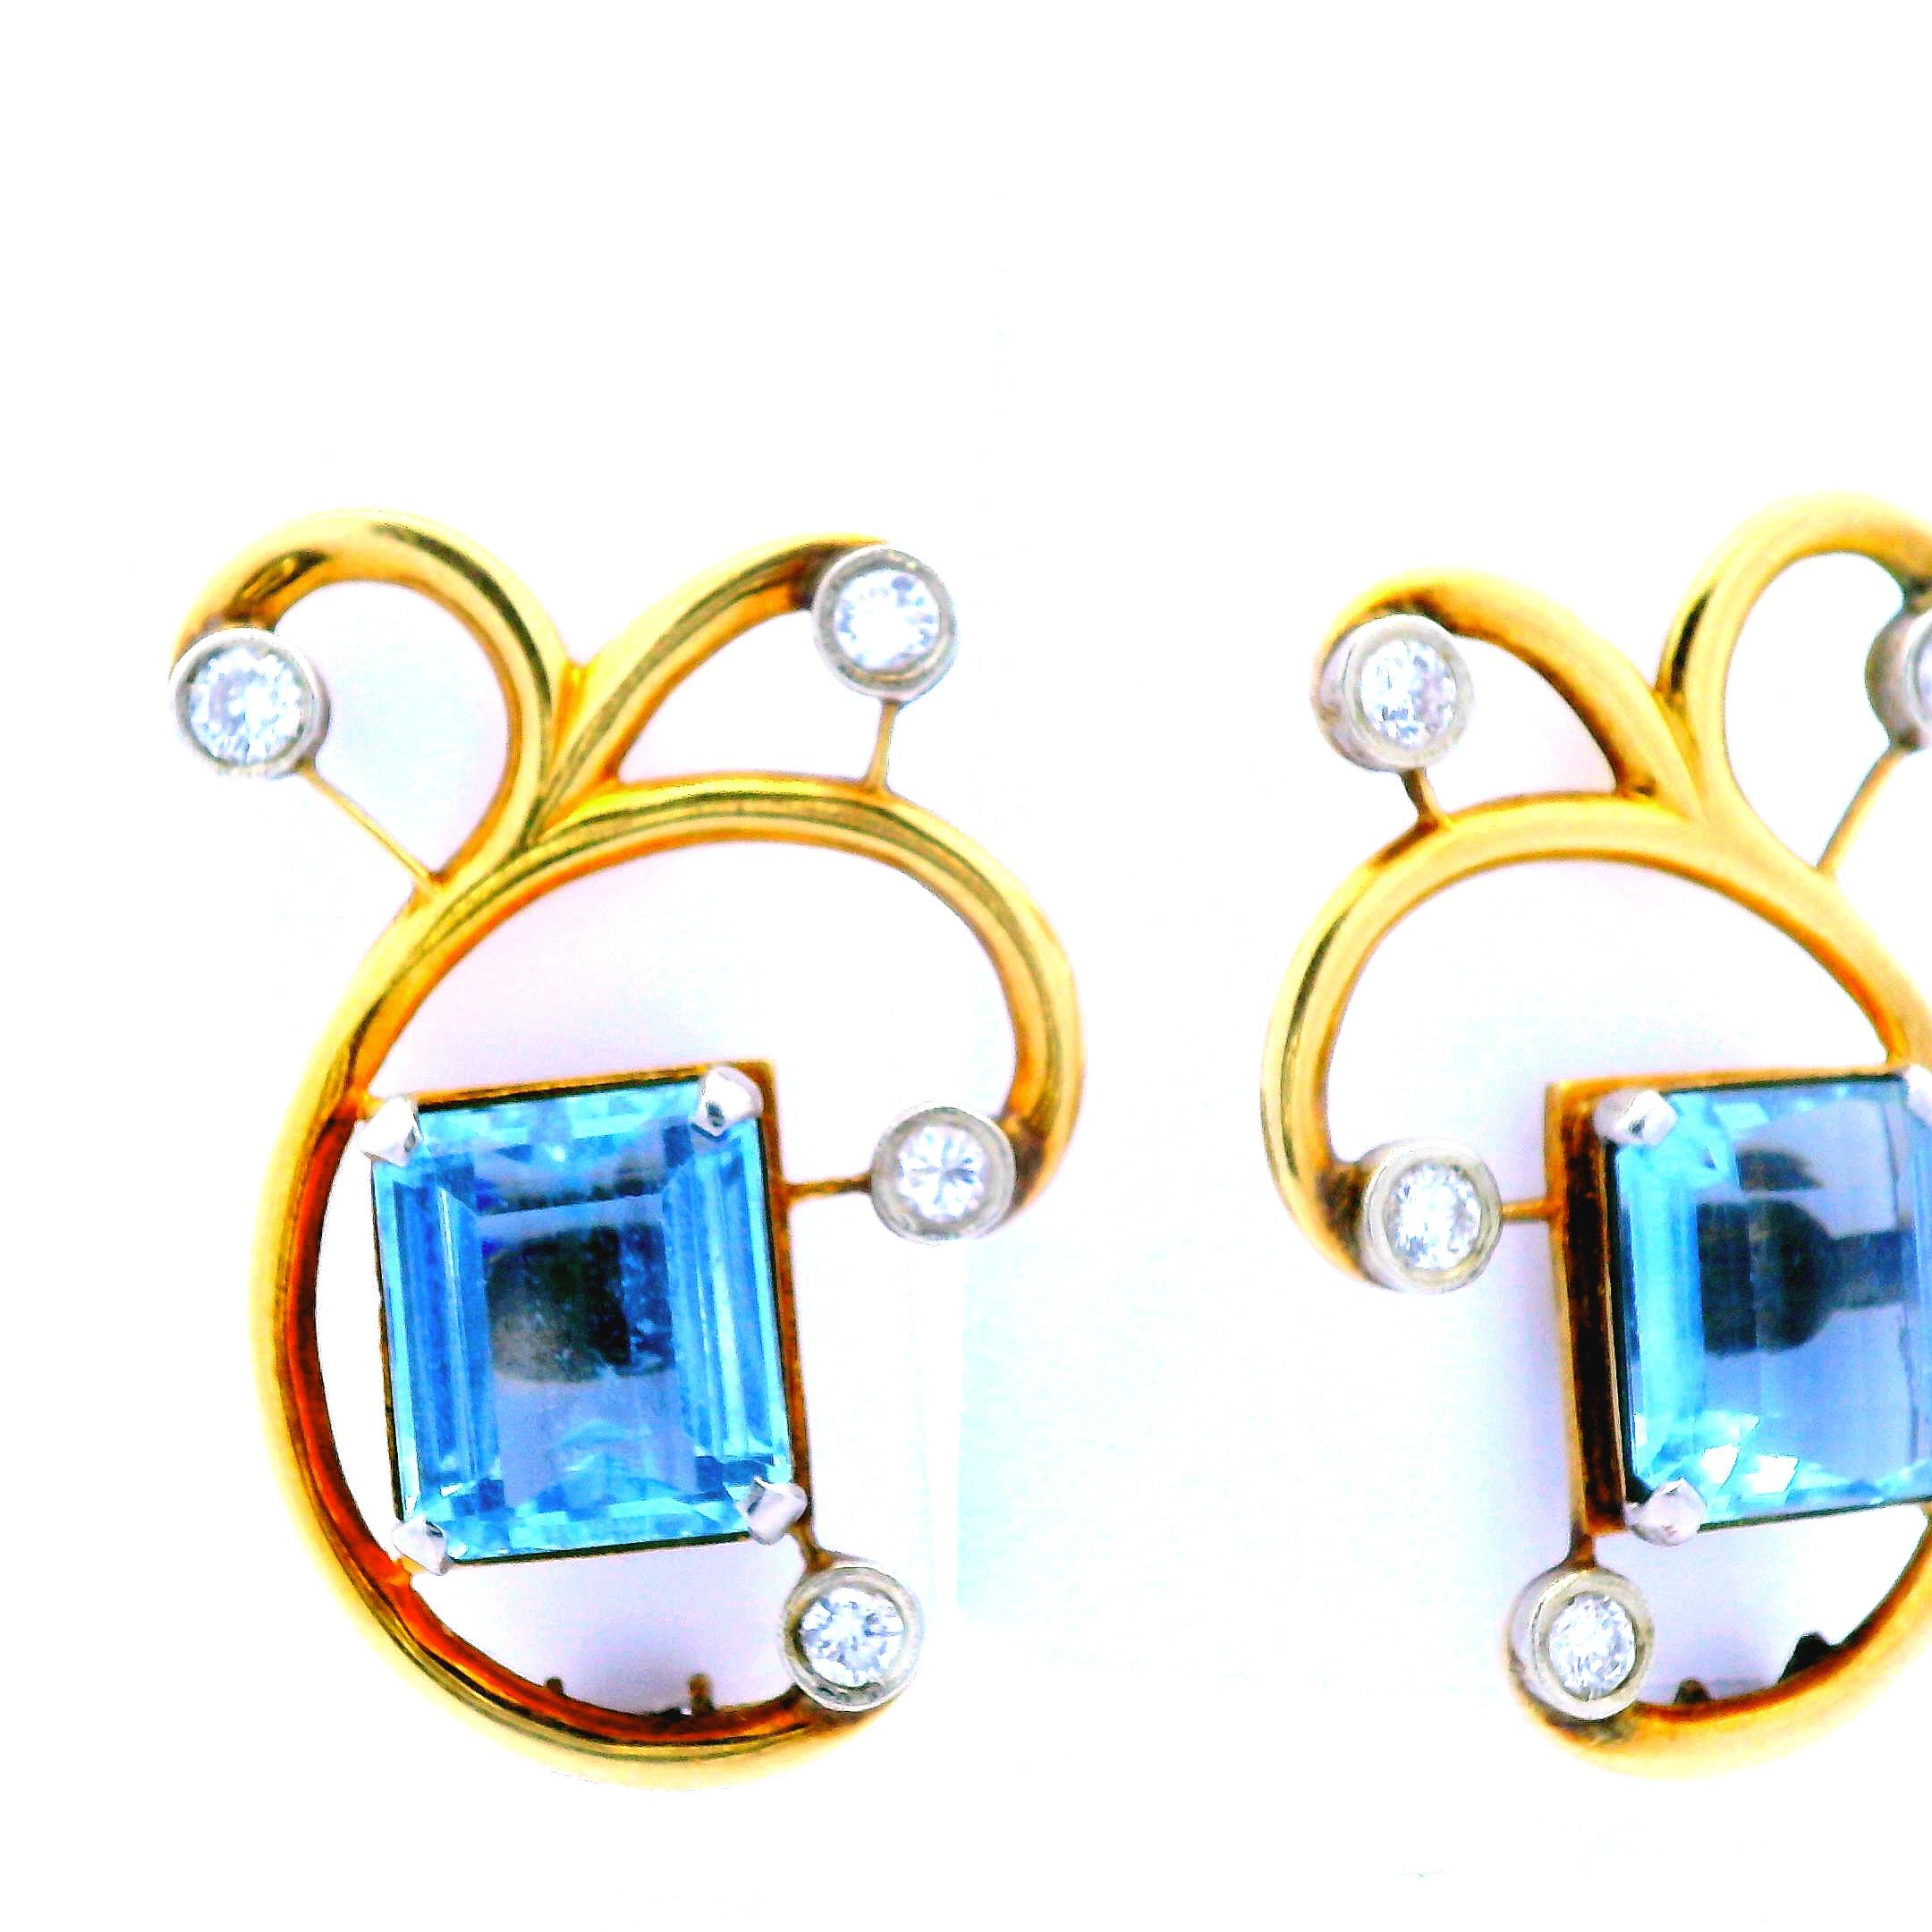 Diese schönen Ohrringe aus den 1950er Jahren sind aus 14-karätigem Roségold mit Aquamarin und Diamant gefertigt. Das einzigartige Design dieser Ohrringe erlaubt es, sie an beiden Ohren zu tragen, was mehr Stiloptionen beim Tragen ermöglicht.